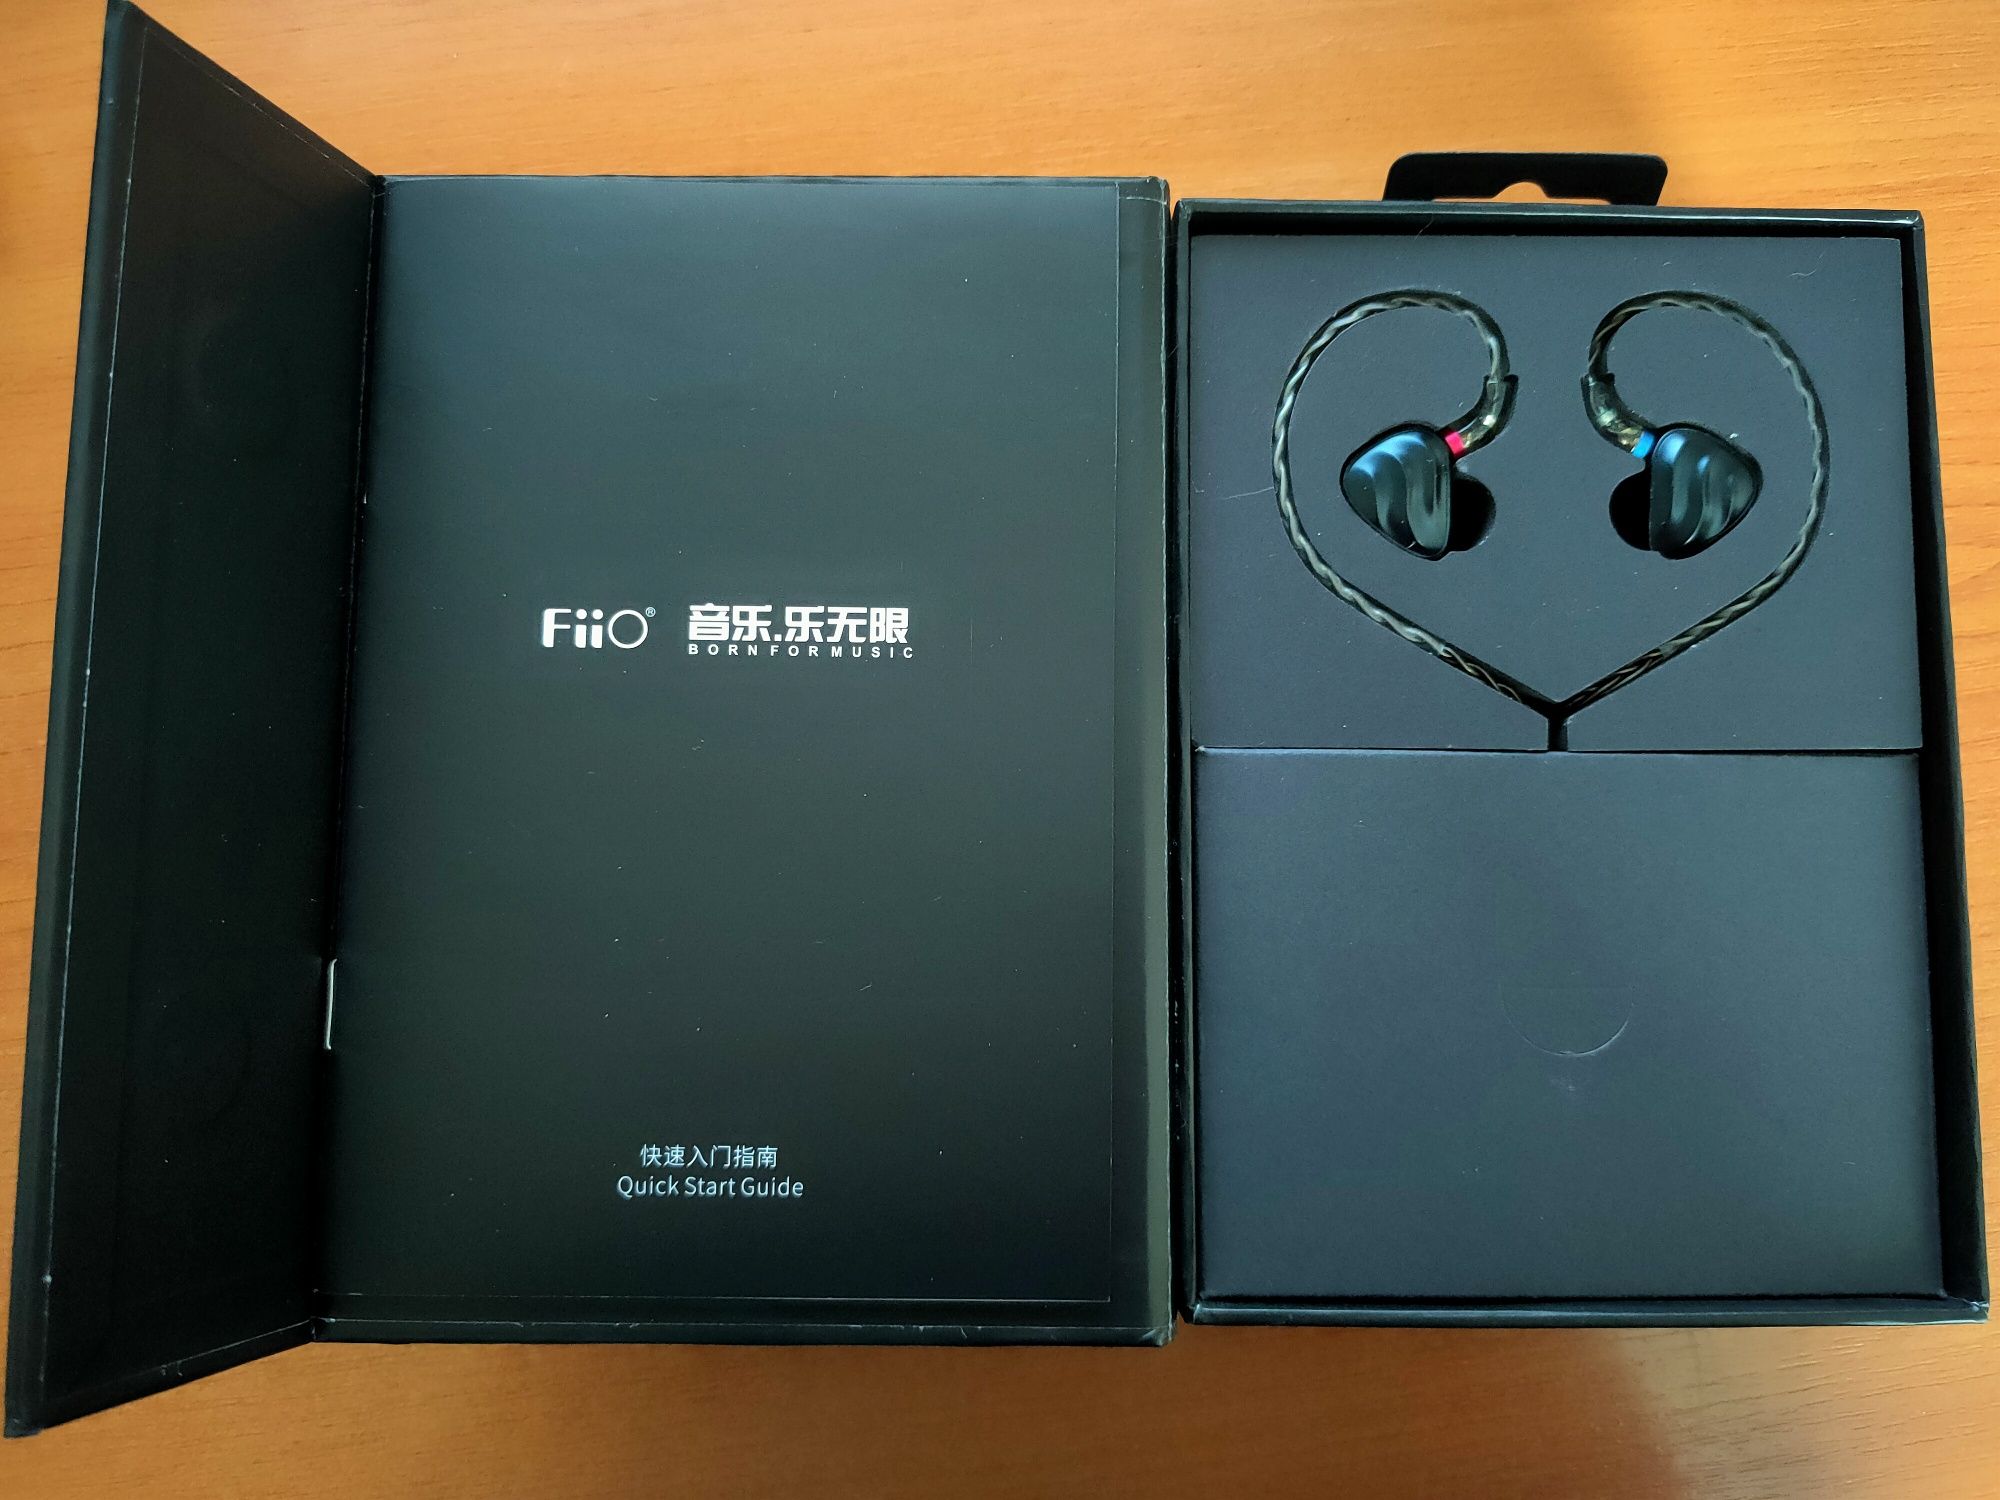 Навушники Fiio FH3 + кабель Fiio LC-RC MMCX